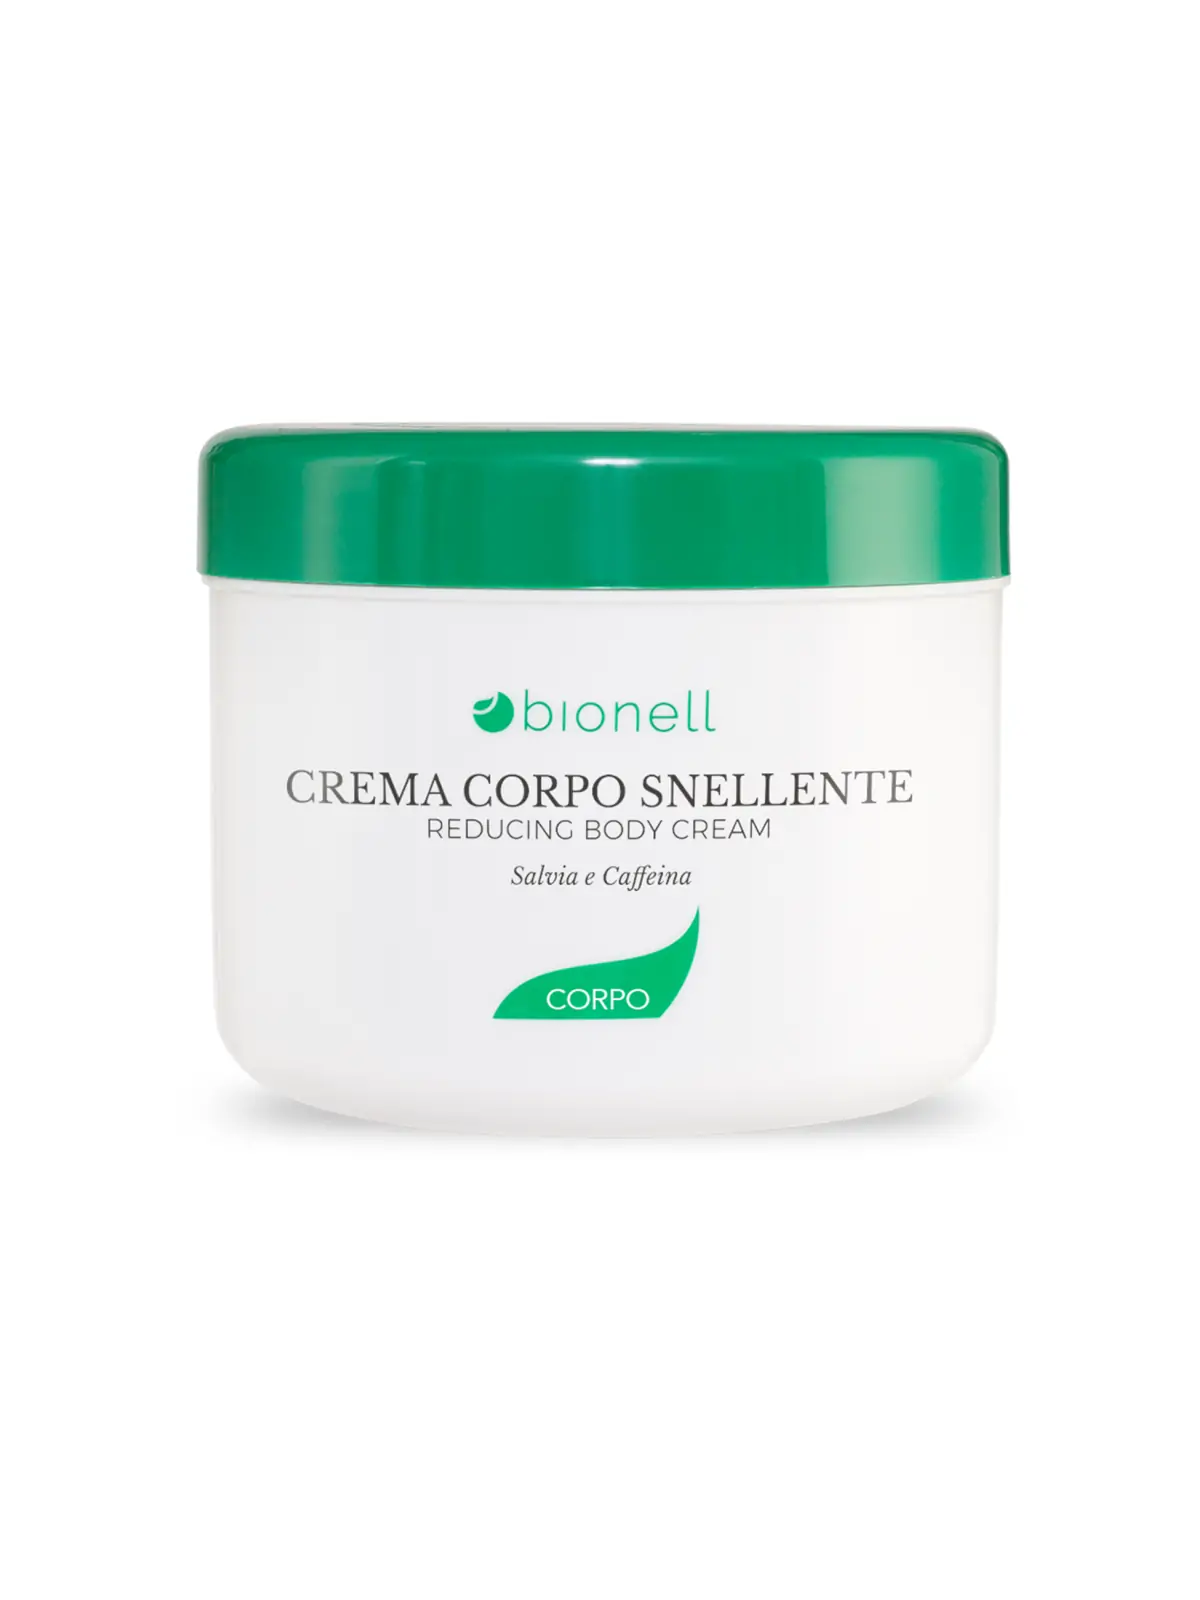 Bionell Crema corpo snellente 500 ml 9,10 € -35%